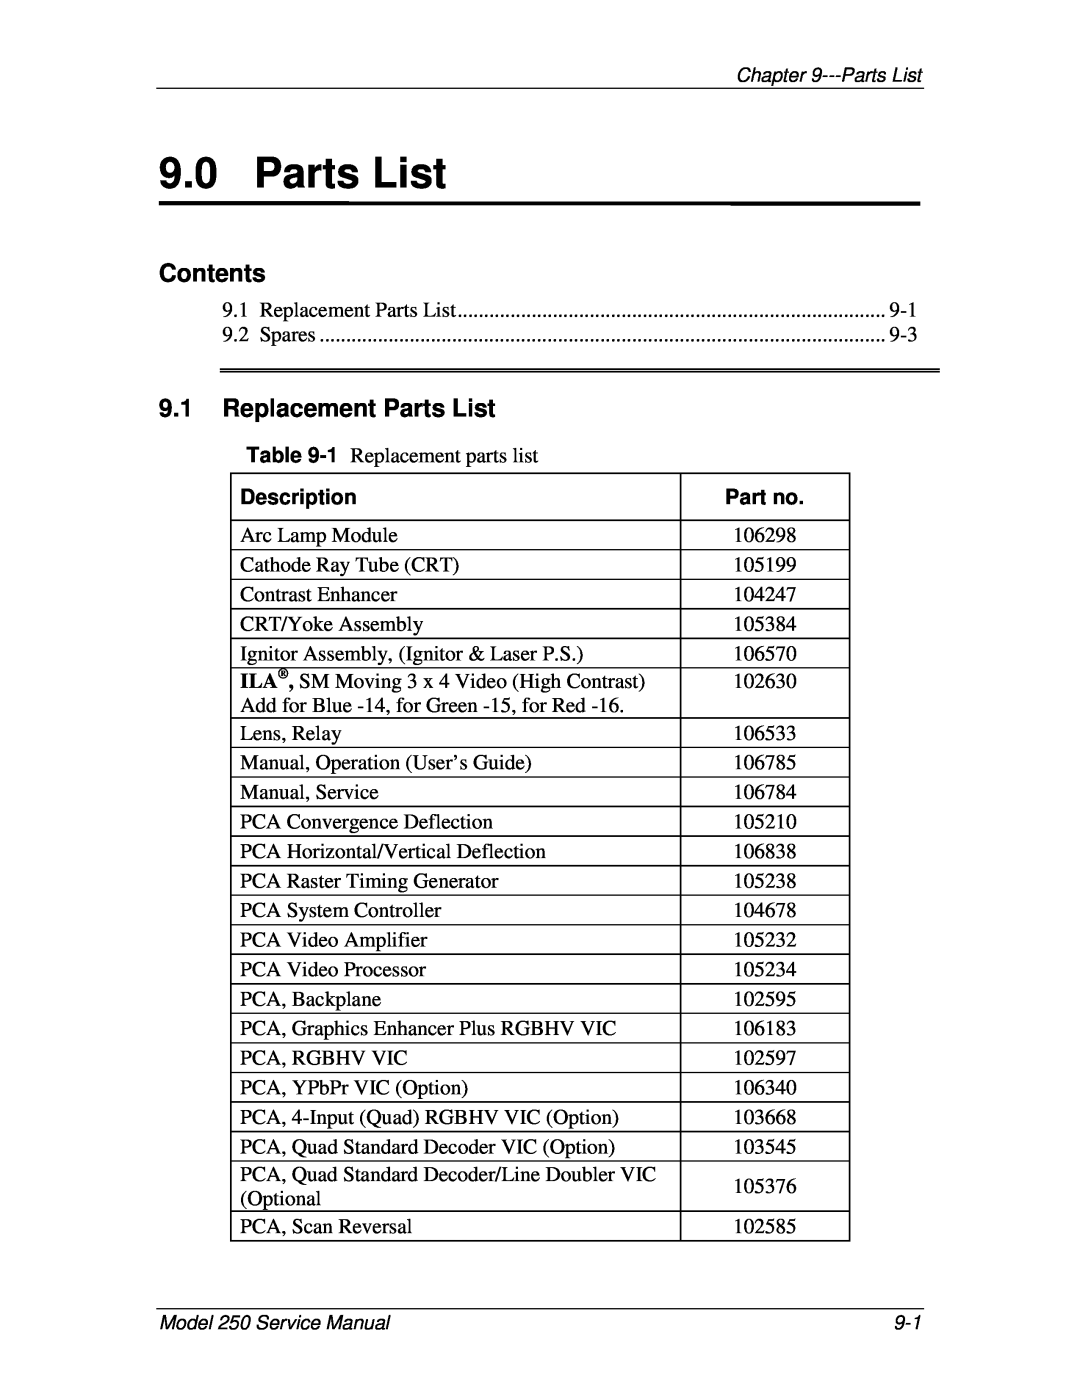 JVC 250 service manual Replacement Parts List, Description, Contents 